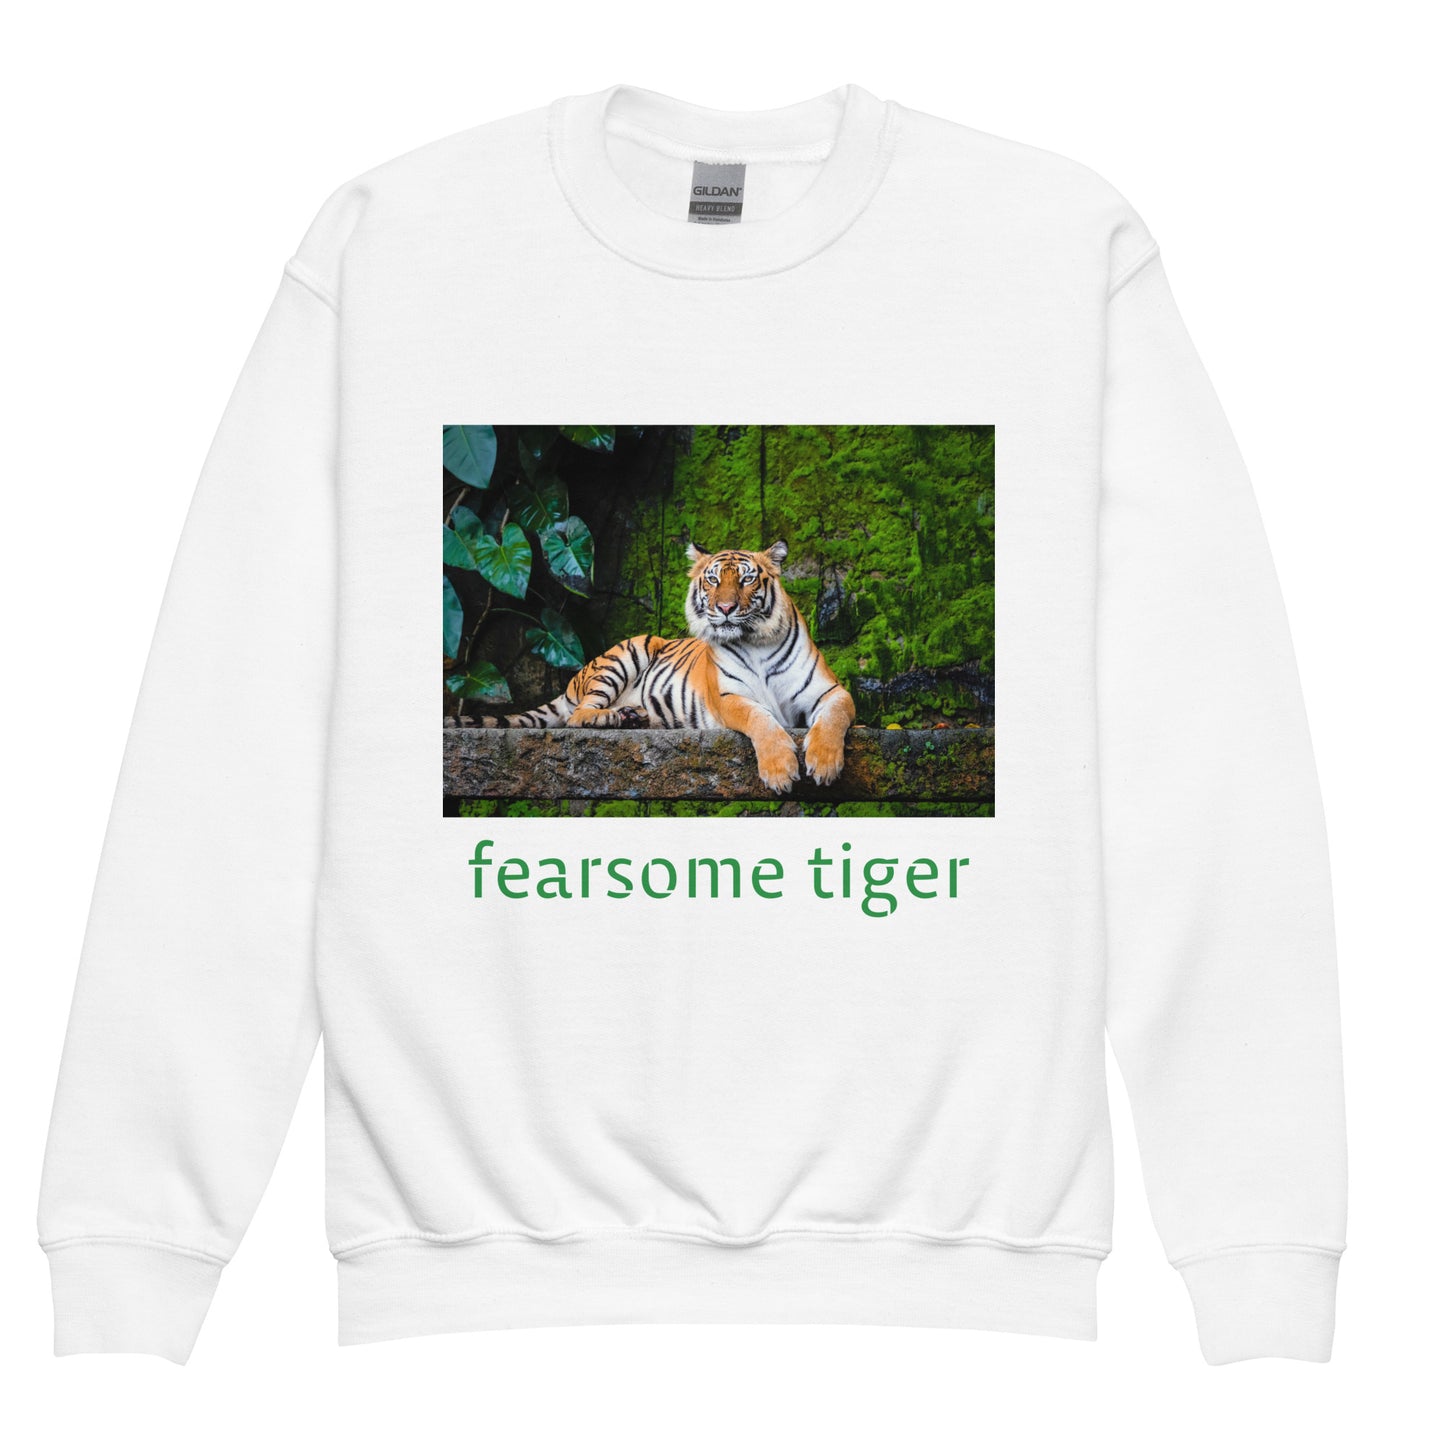 Fearsome Tiger by Gigi Youth crewneck sweatshirt